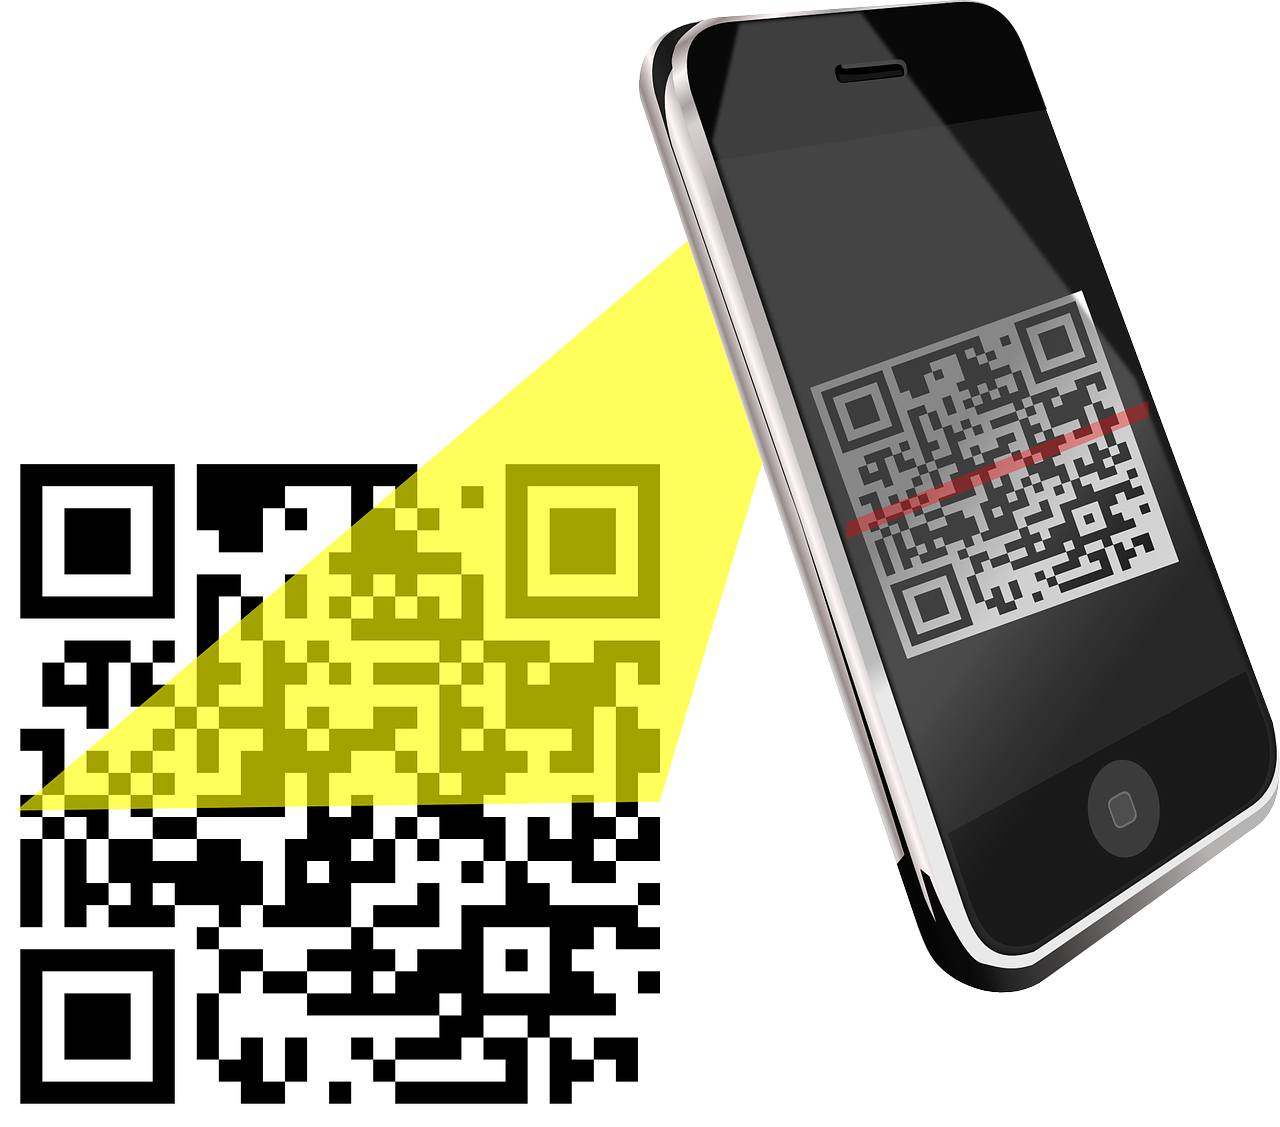 QR код. Смартфон QR код. Сканировать QR код. Иллюстрация смартфона с QR кодом. Qr код доставки